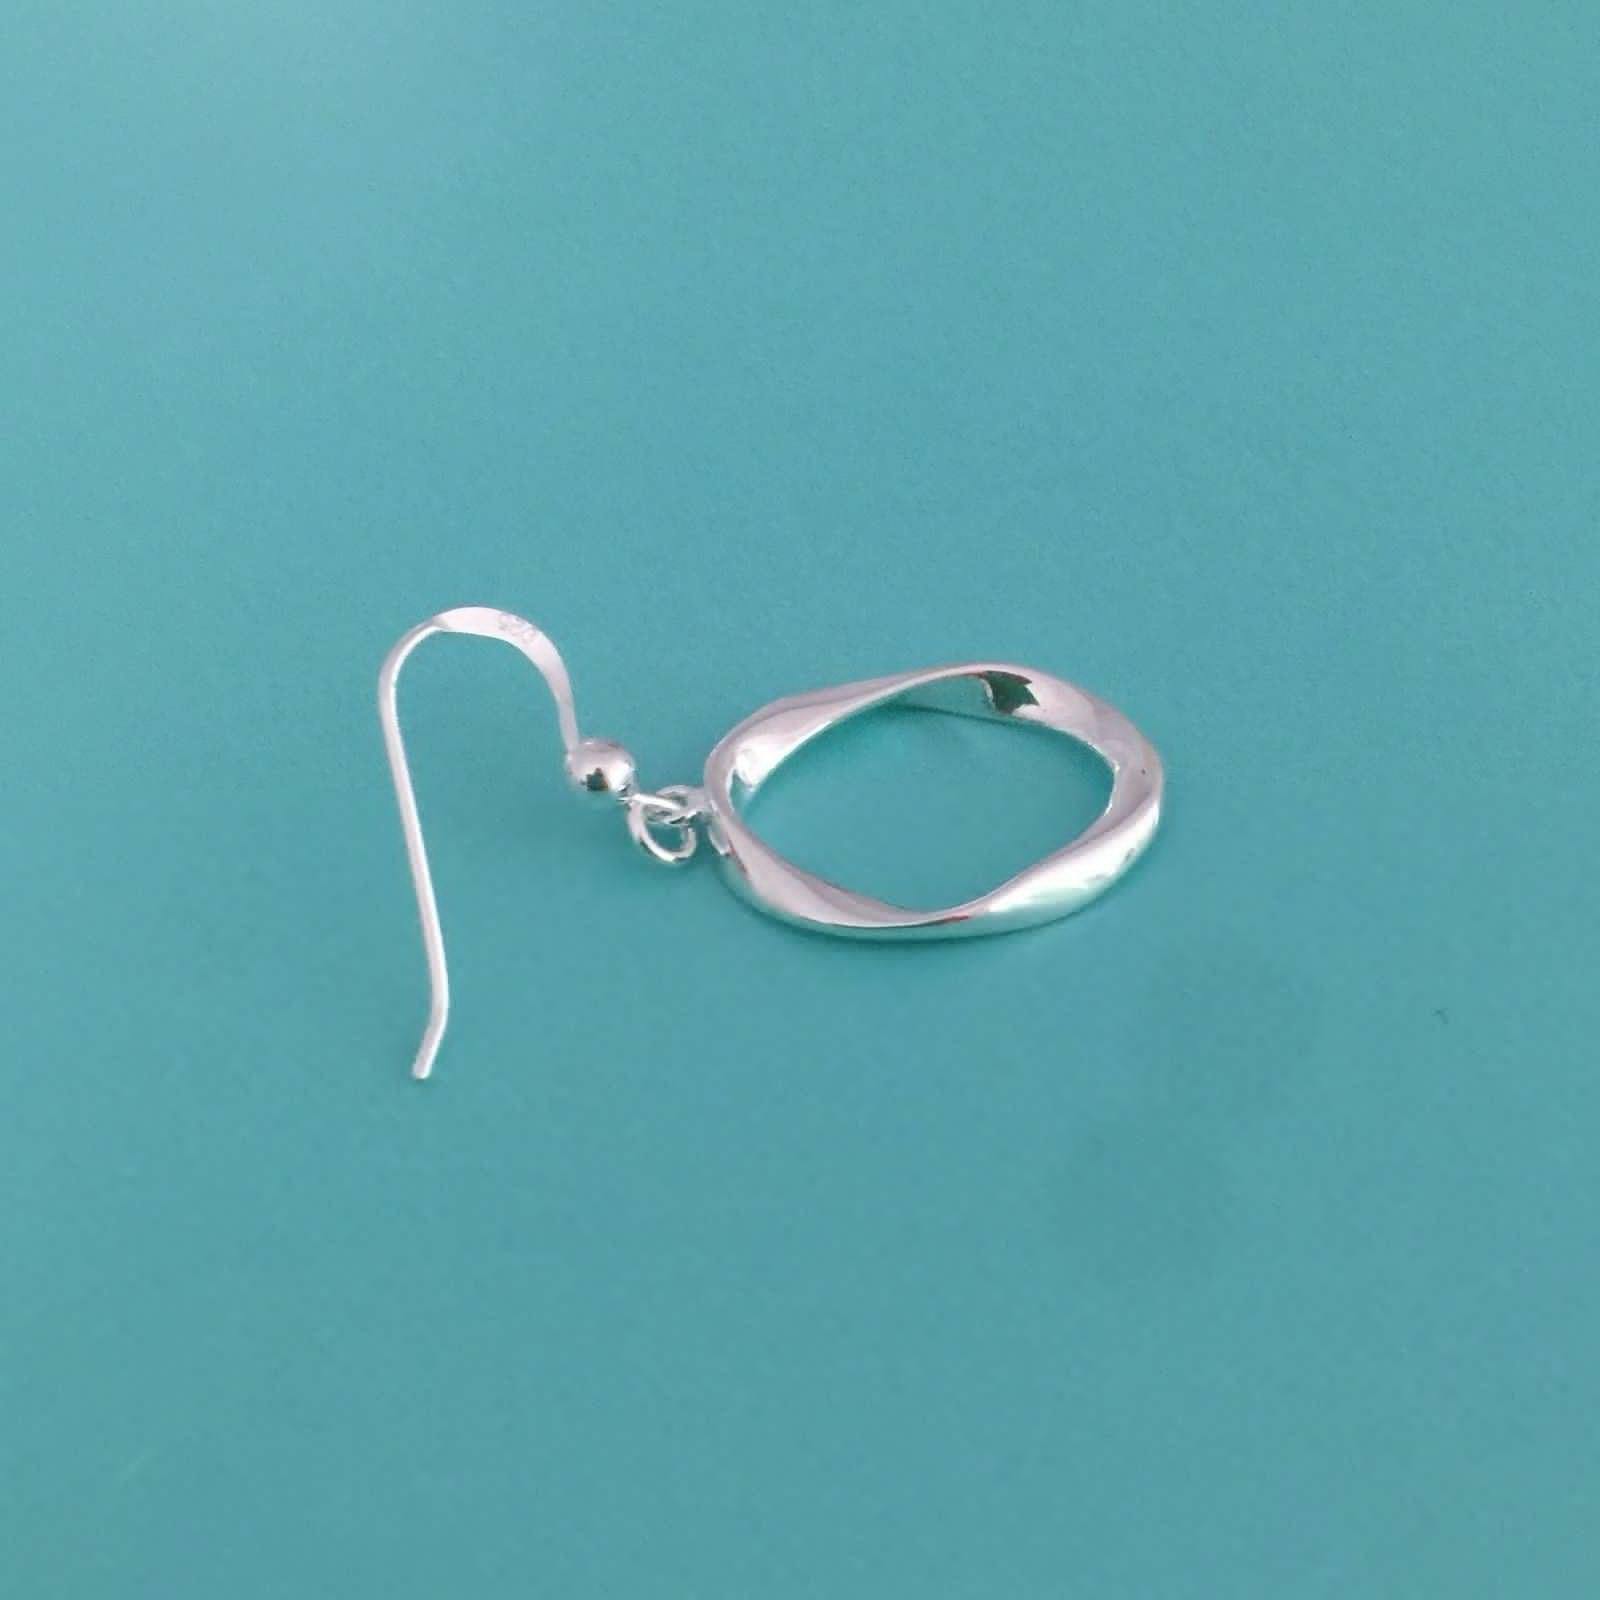 Sterling Silver Asymmetrical Oval Shape Hook Drop Dangle Earrings - STERLING SILVER DESIGNS